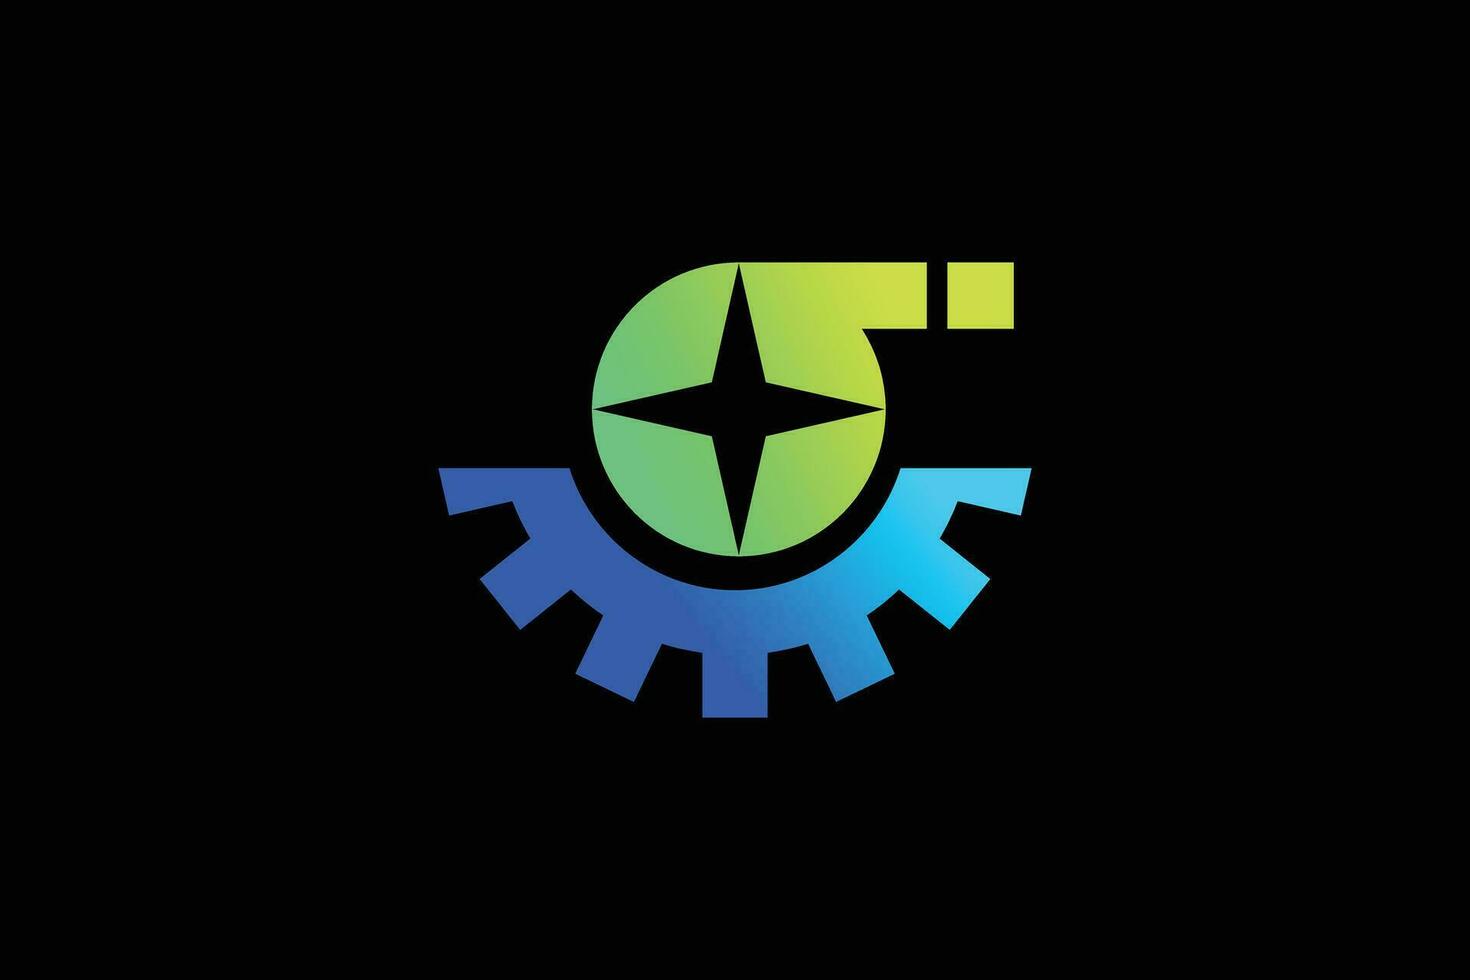 sigma e Ingranaggio di moda vettore logo design